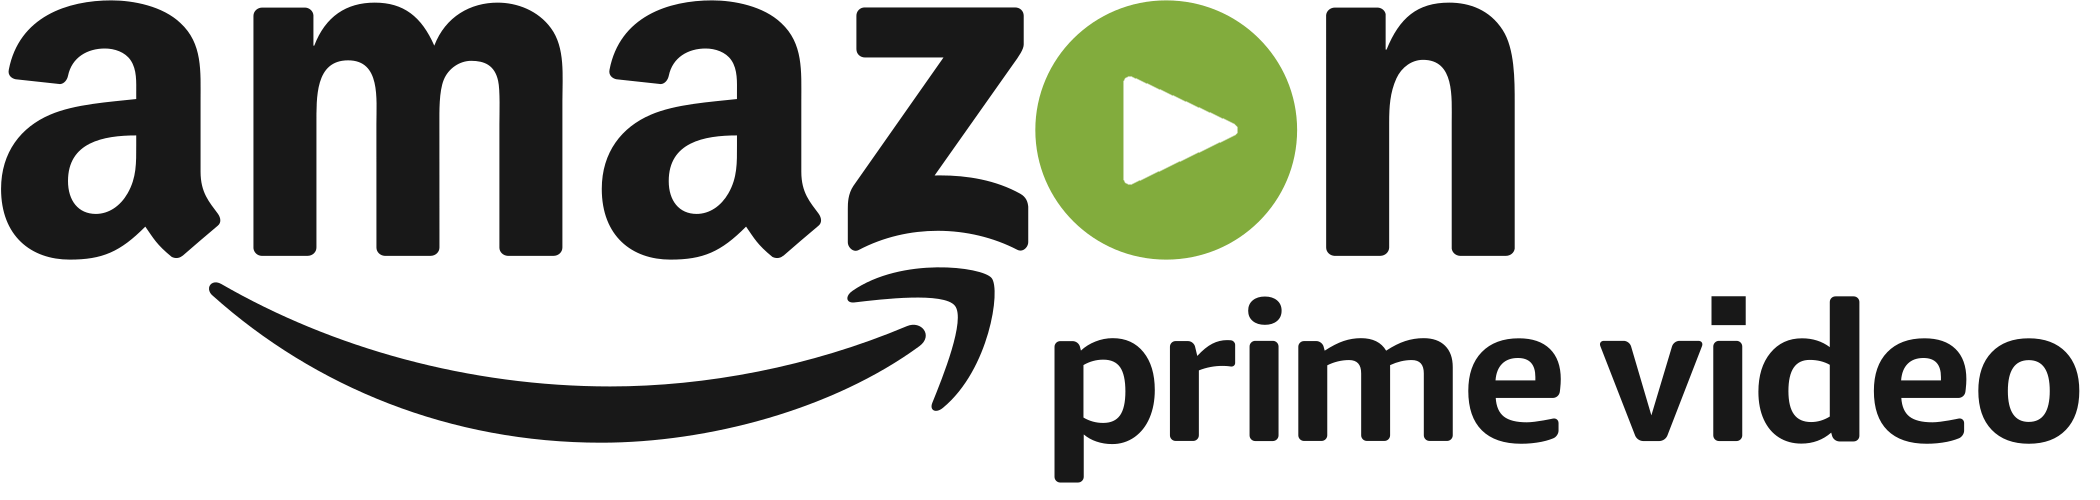 Amazon Prime Video Logo PNG - FREE Vector Design - Cdr, Ai ... - Amazon Logo Design